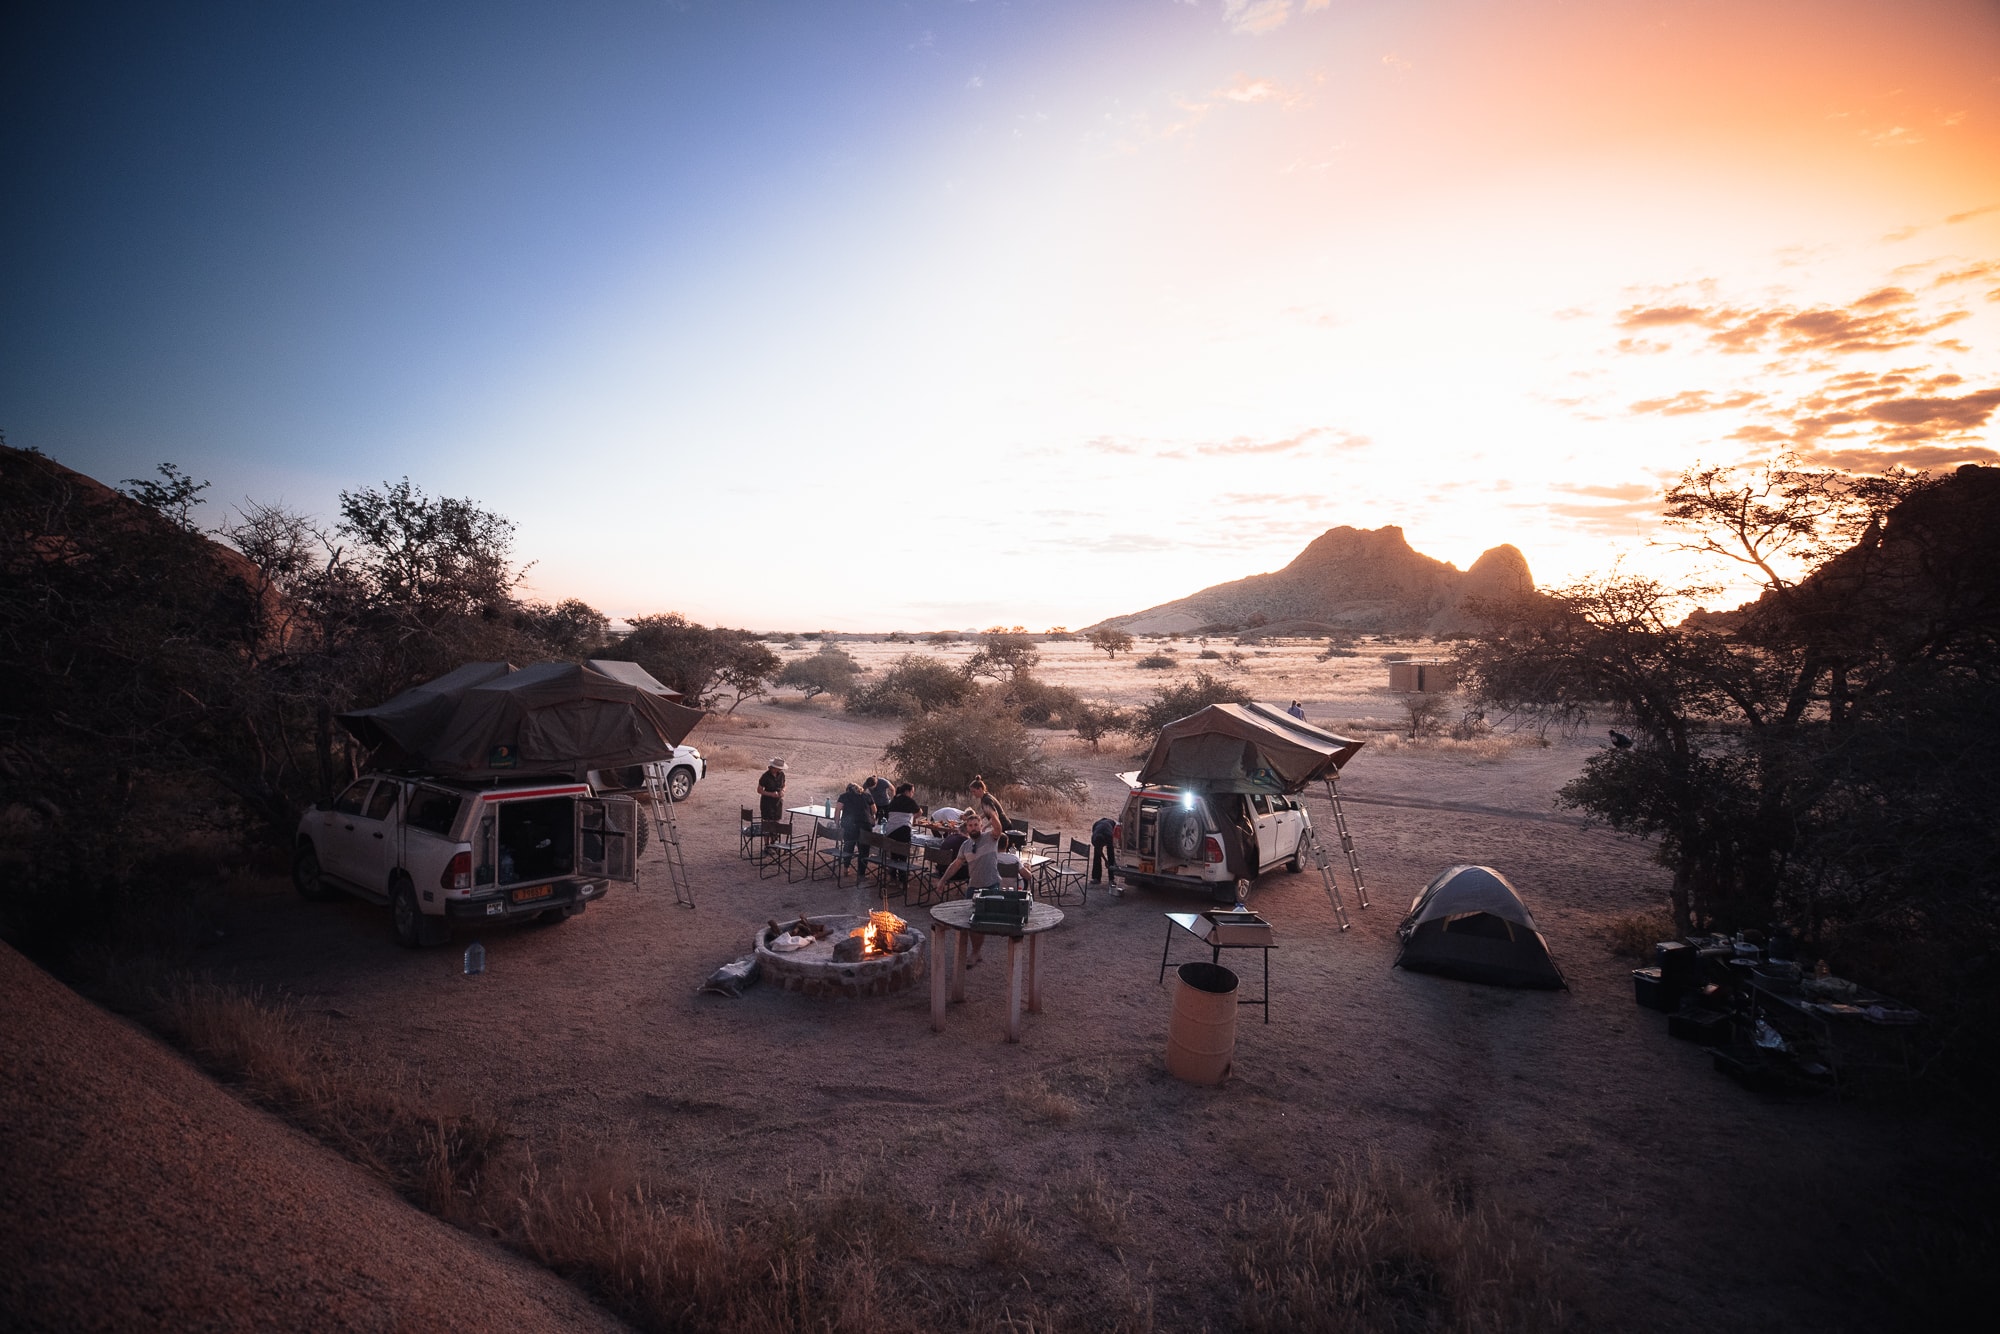 Gruppe beim Campen in Namibia mit Autos und Dachzelten